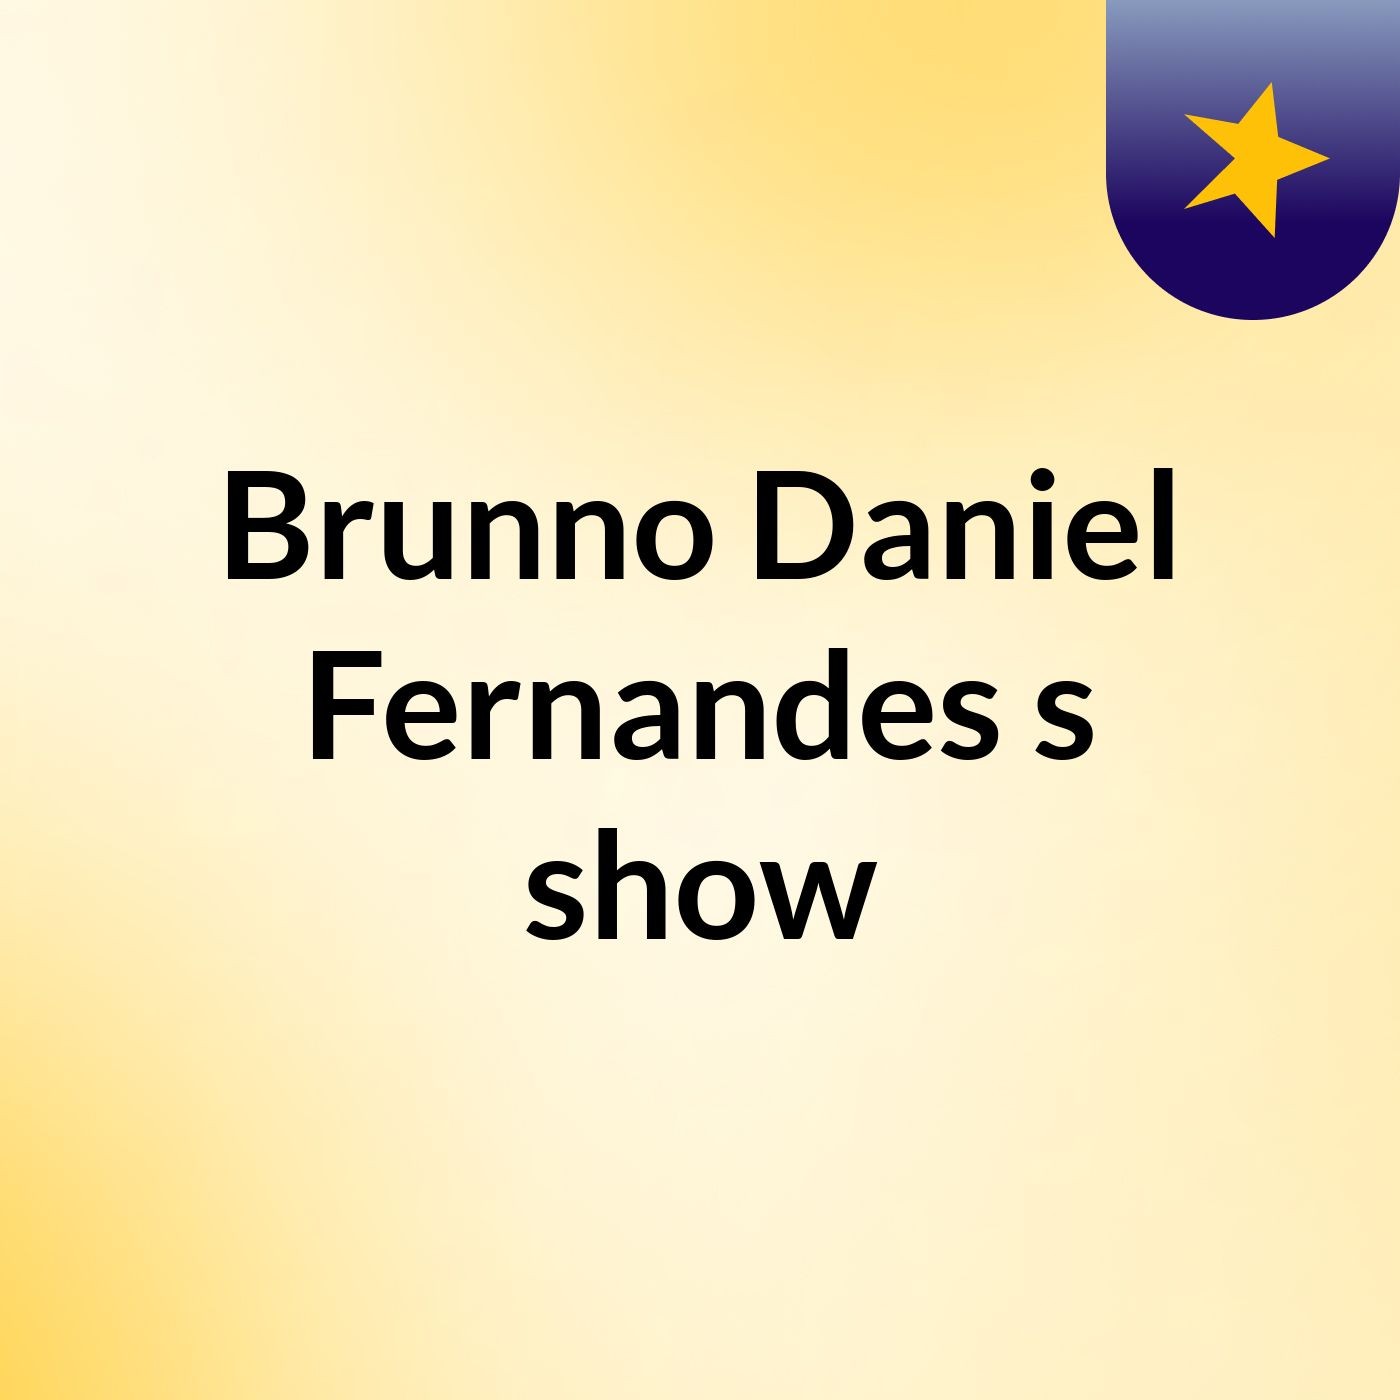 Brunno Daniel Fernandes's show